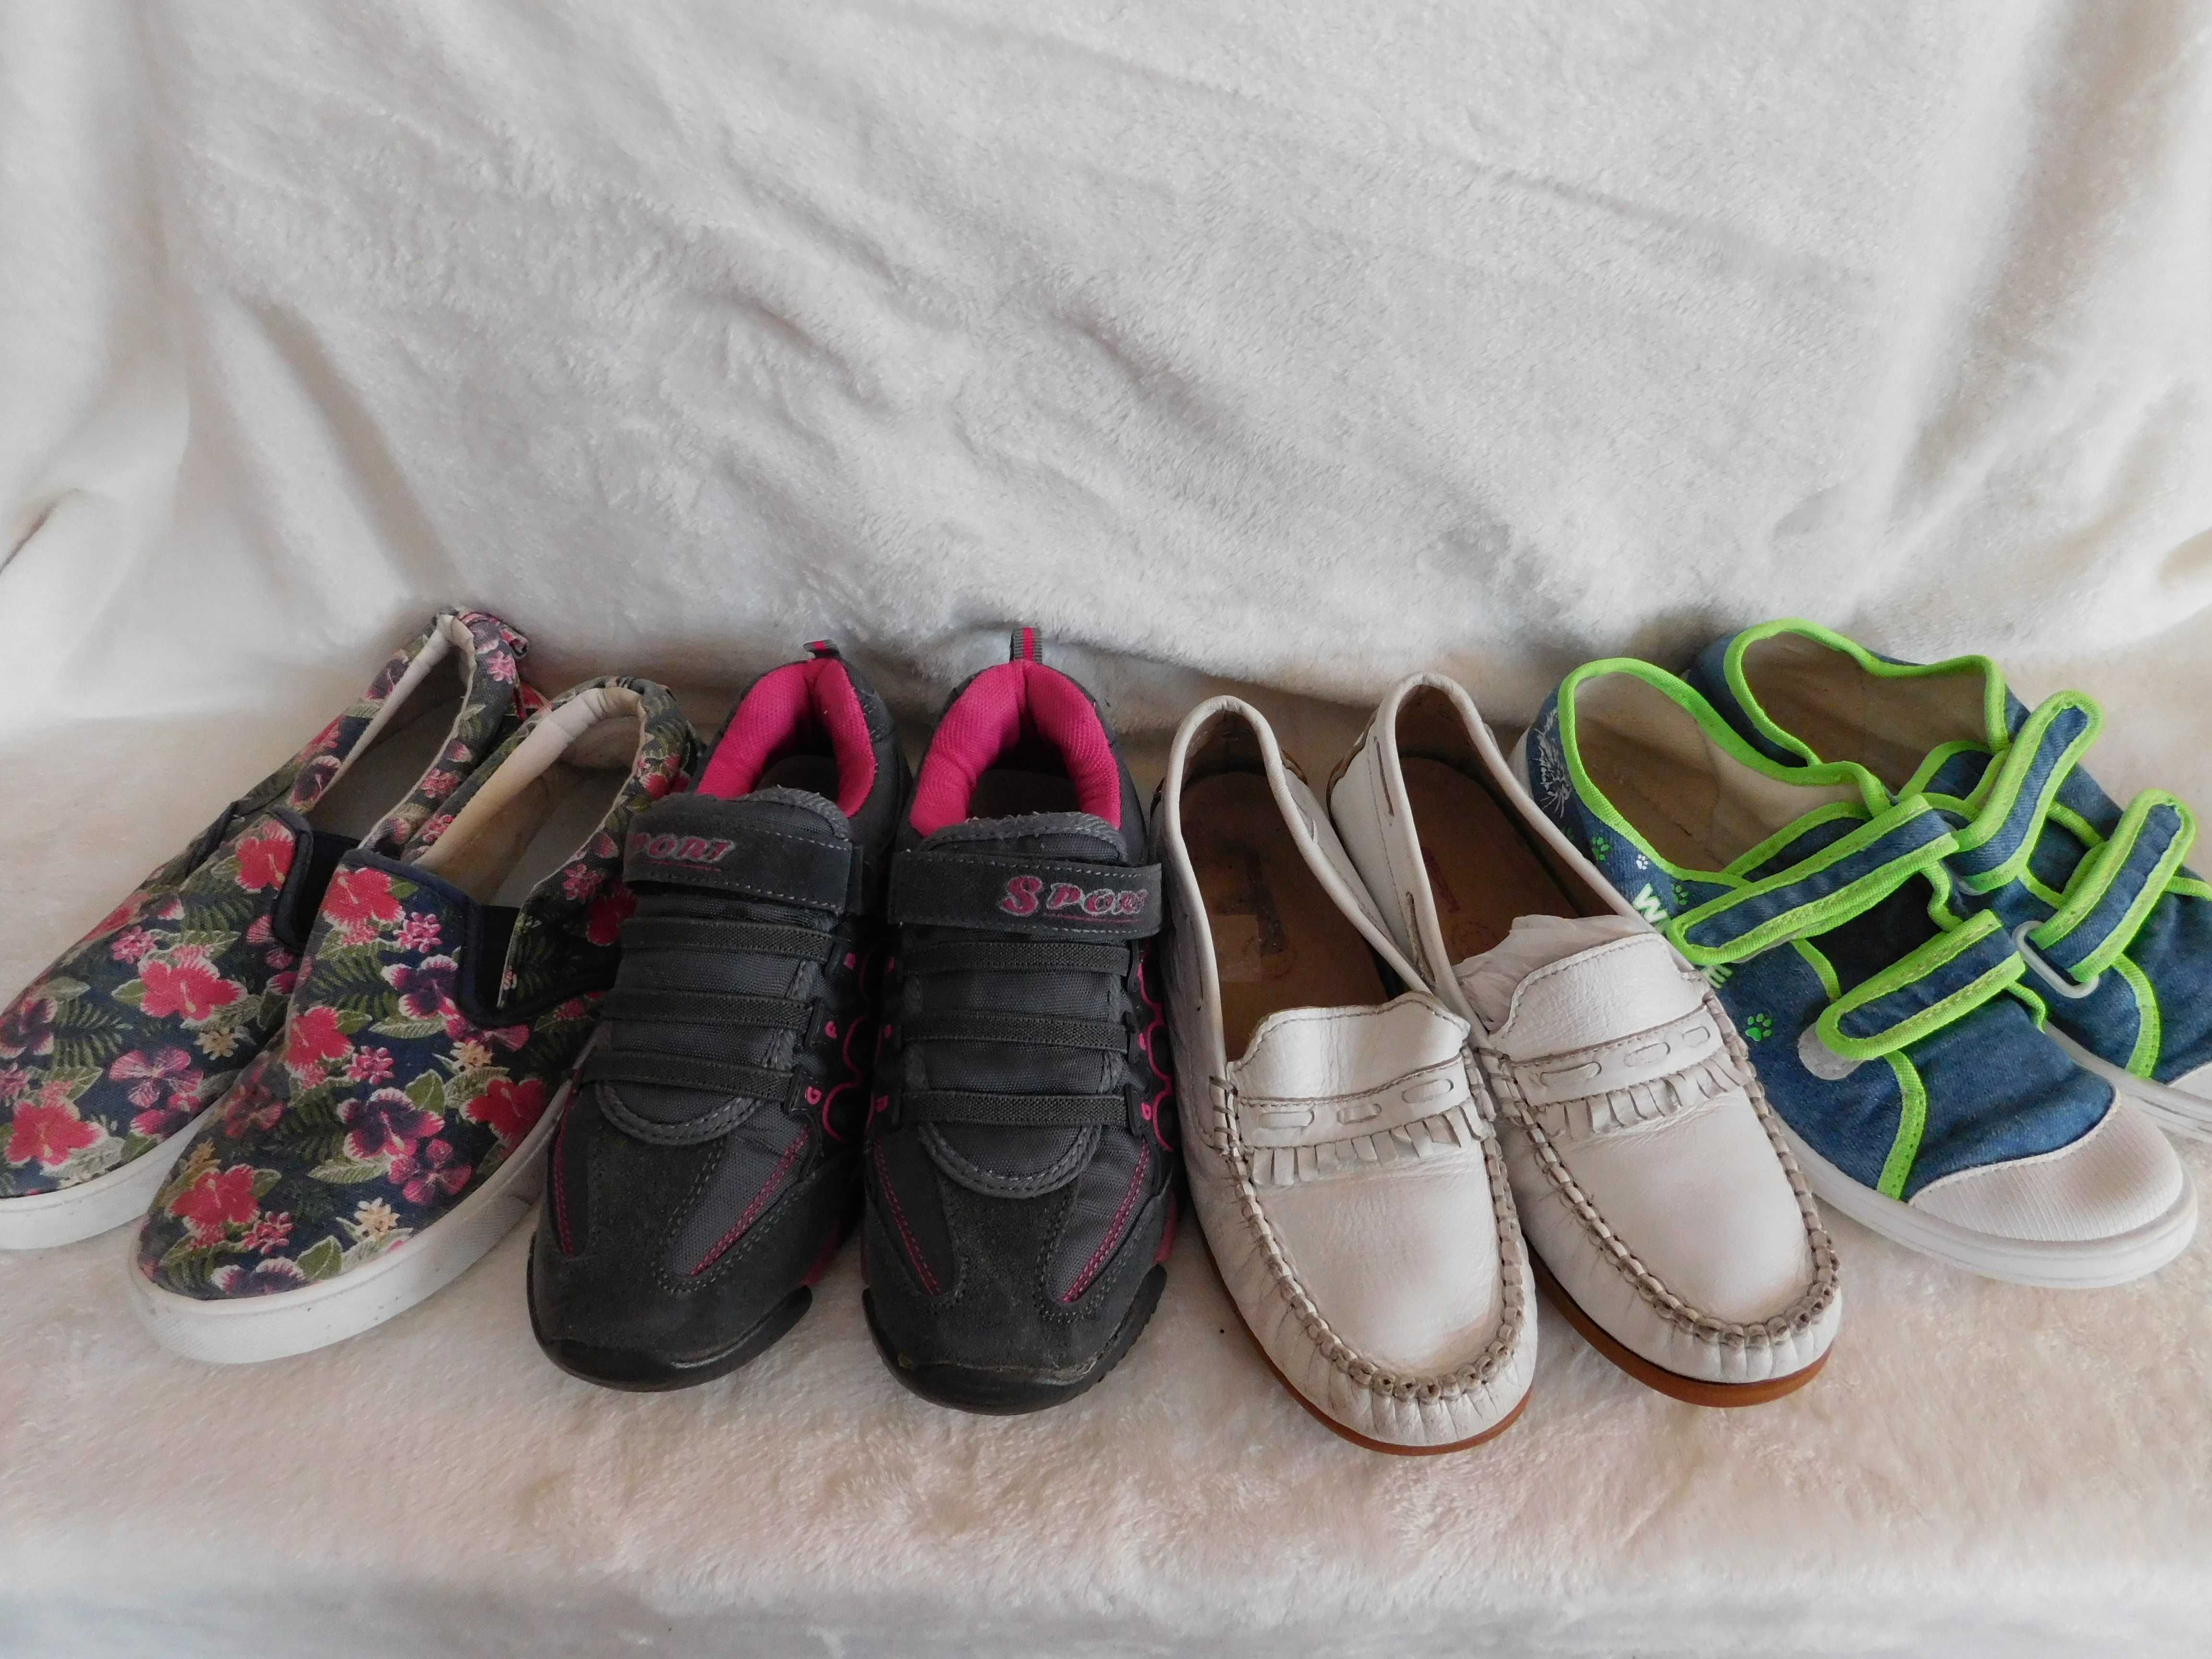 Обувь для девочки пакетом. Туфли р.34, кеды, кроссовки, слипоны - р.35